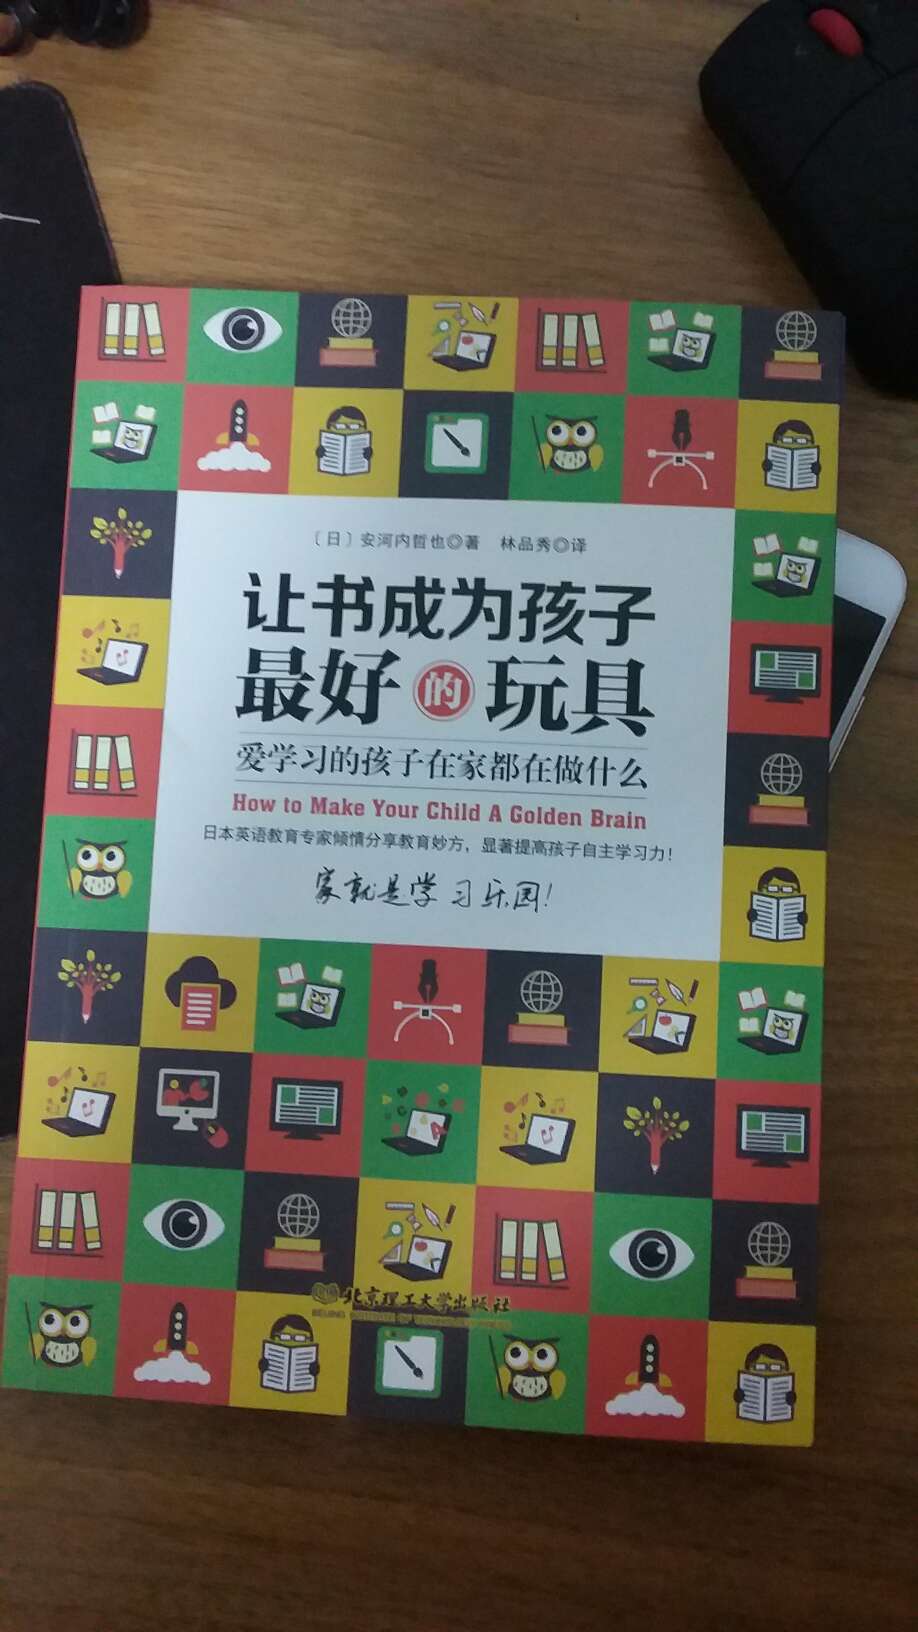 日本作者写的书，跟中国国情不符，并且整体内容没有深度，不推荐大家买。